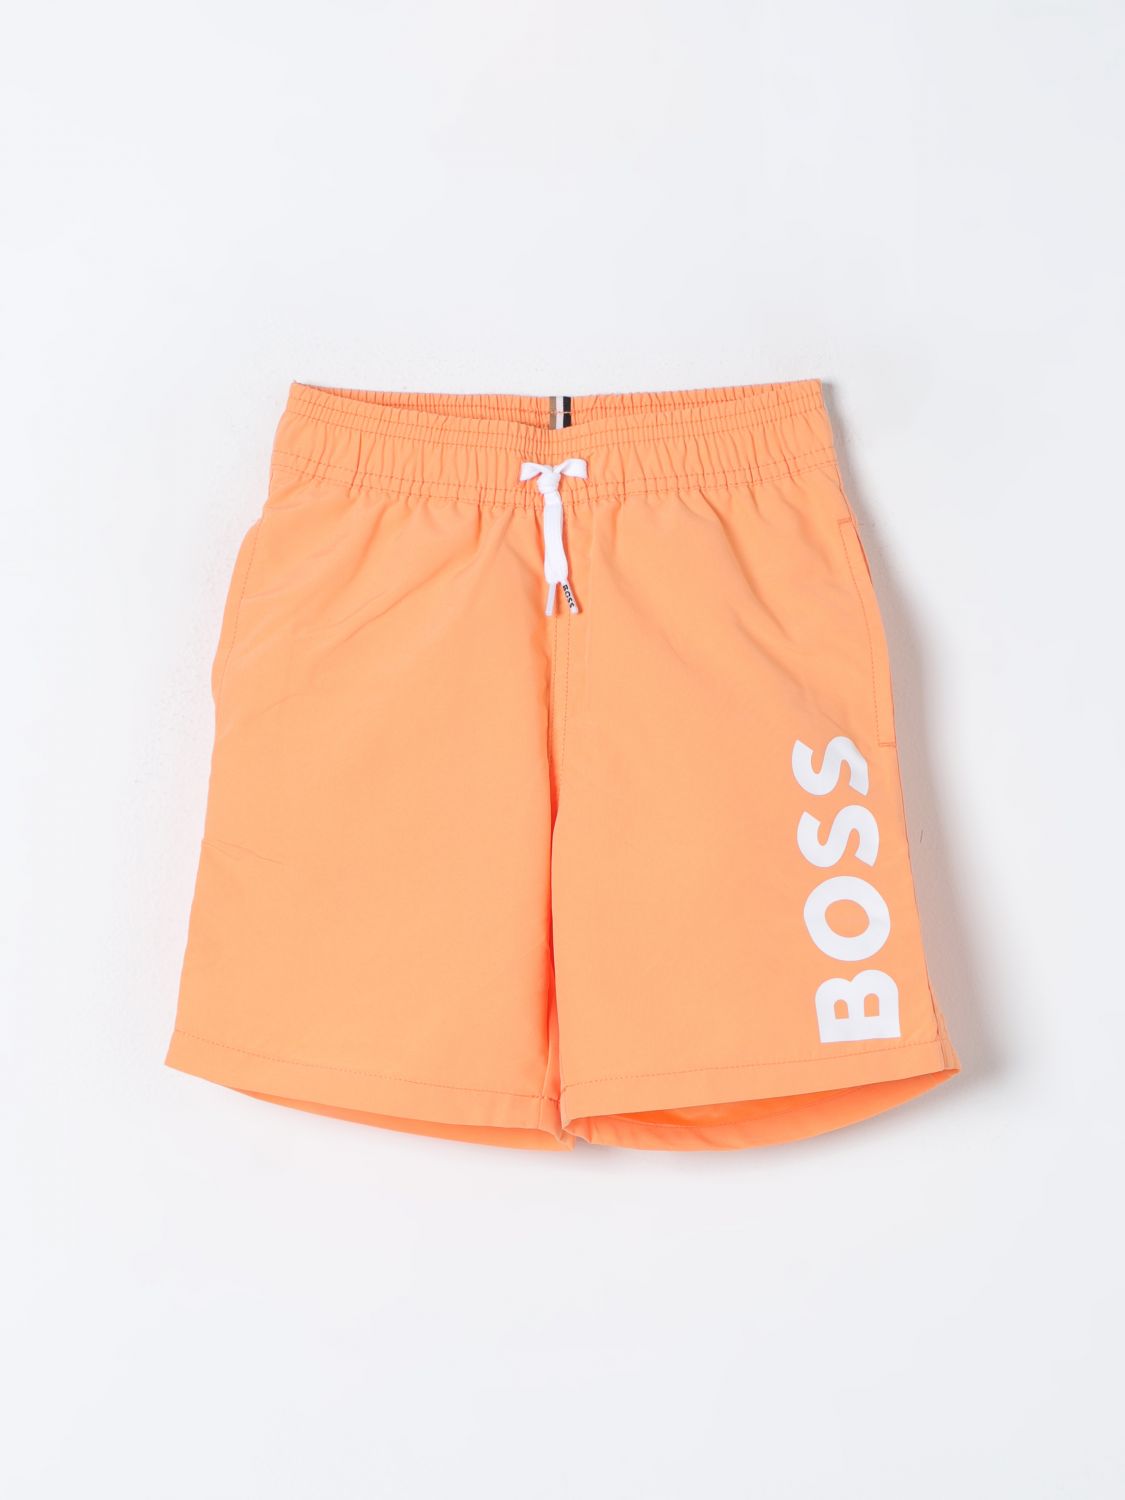 Shop Bosswear Swimsuit Boss Kidswear Kids Color Orange